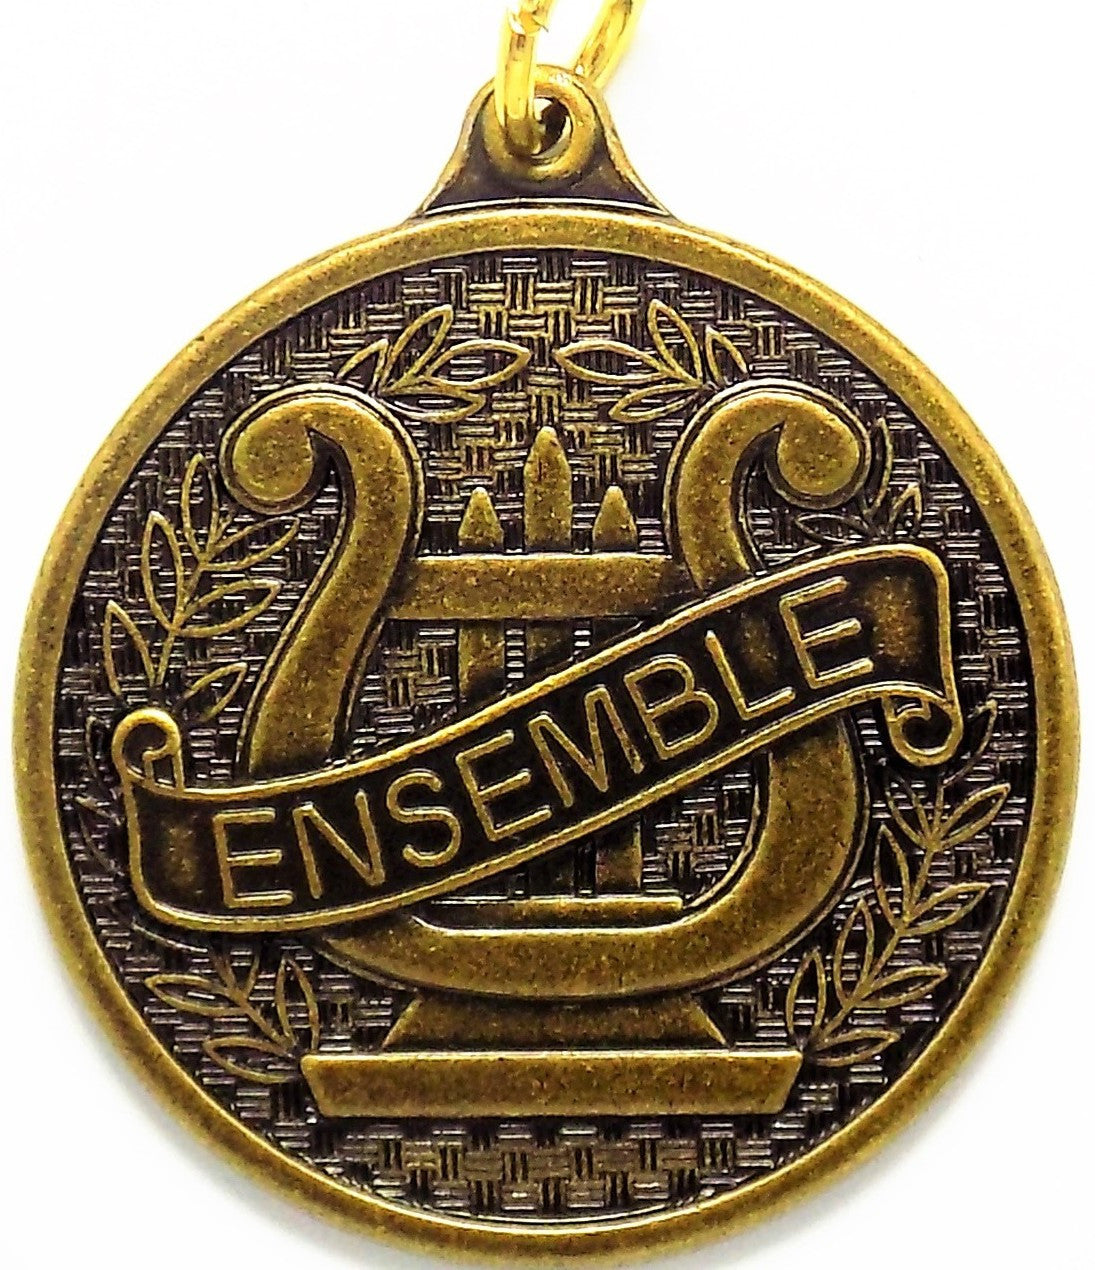 Ensemble Music Medals